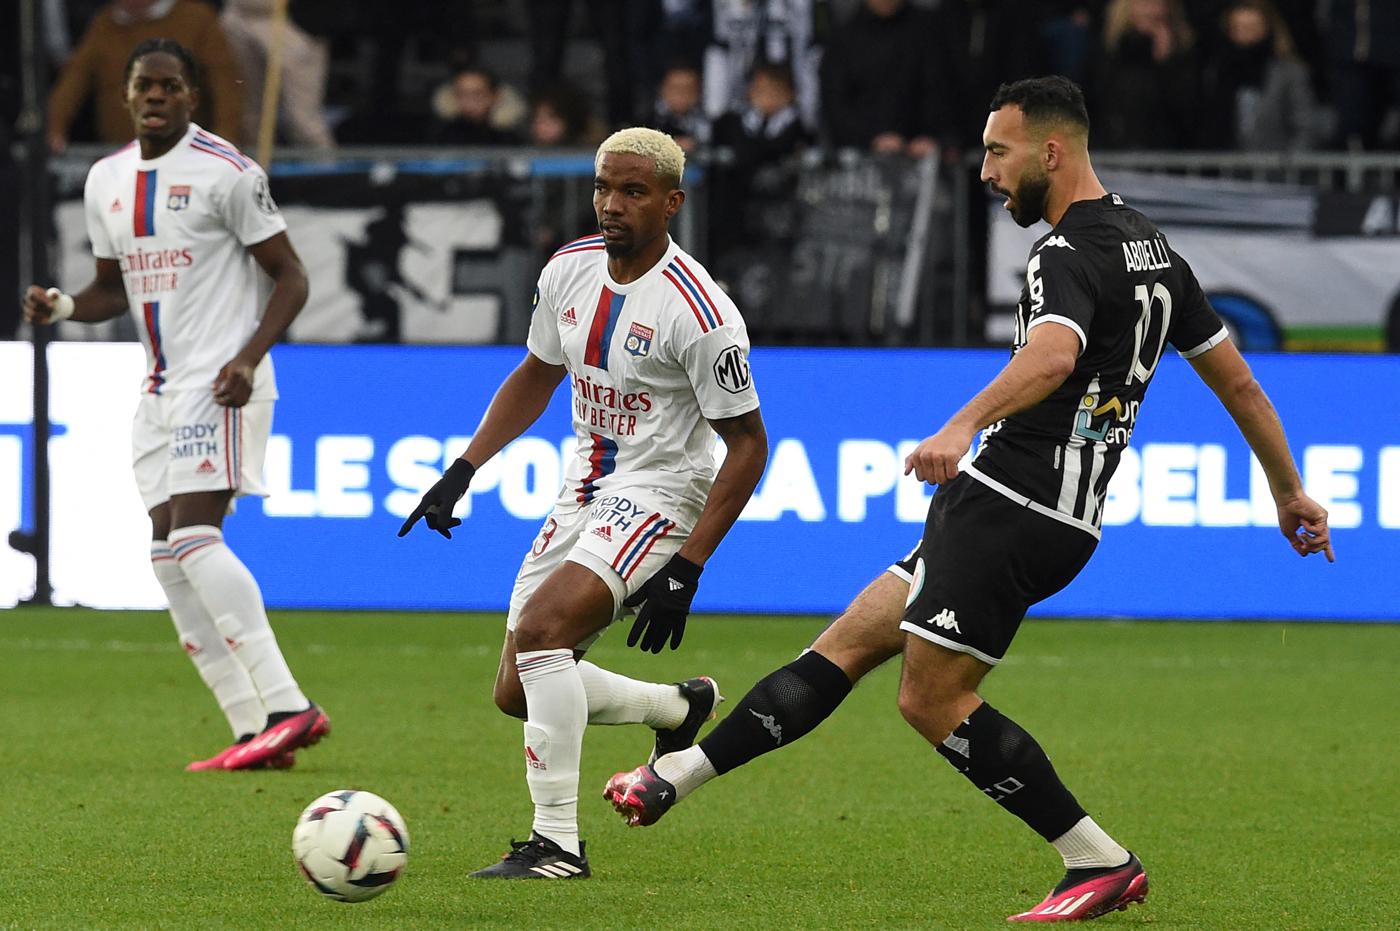 Angers gegen Lyon - 1:3. Französische Meisterschaft, Runde 25. Spielbericht, Statistik.